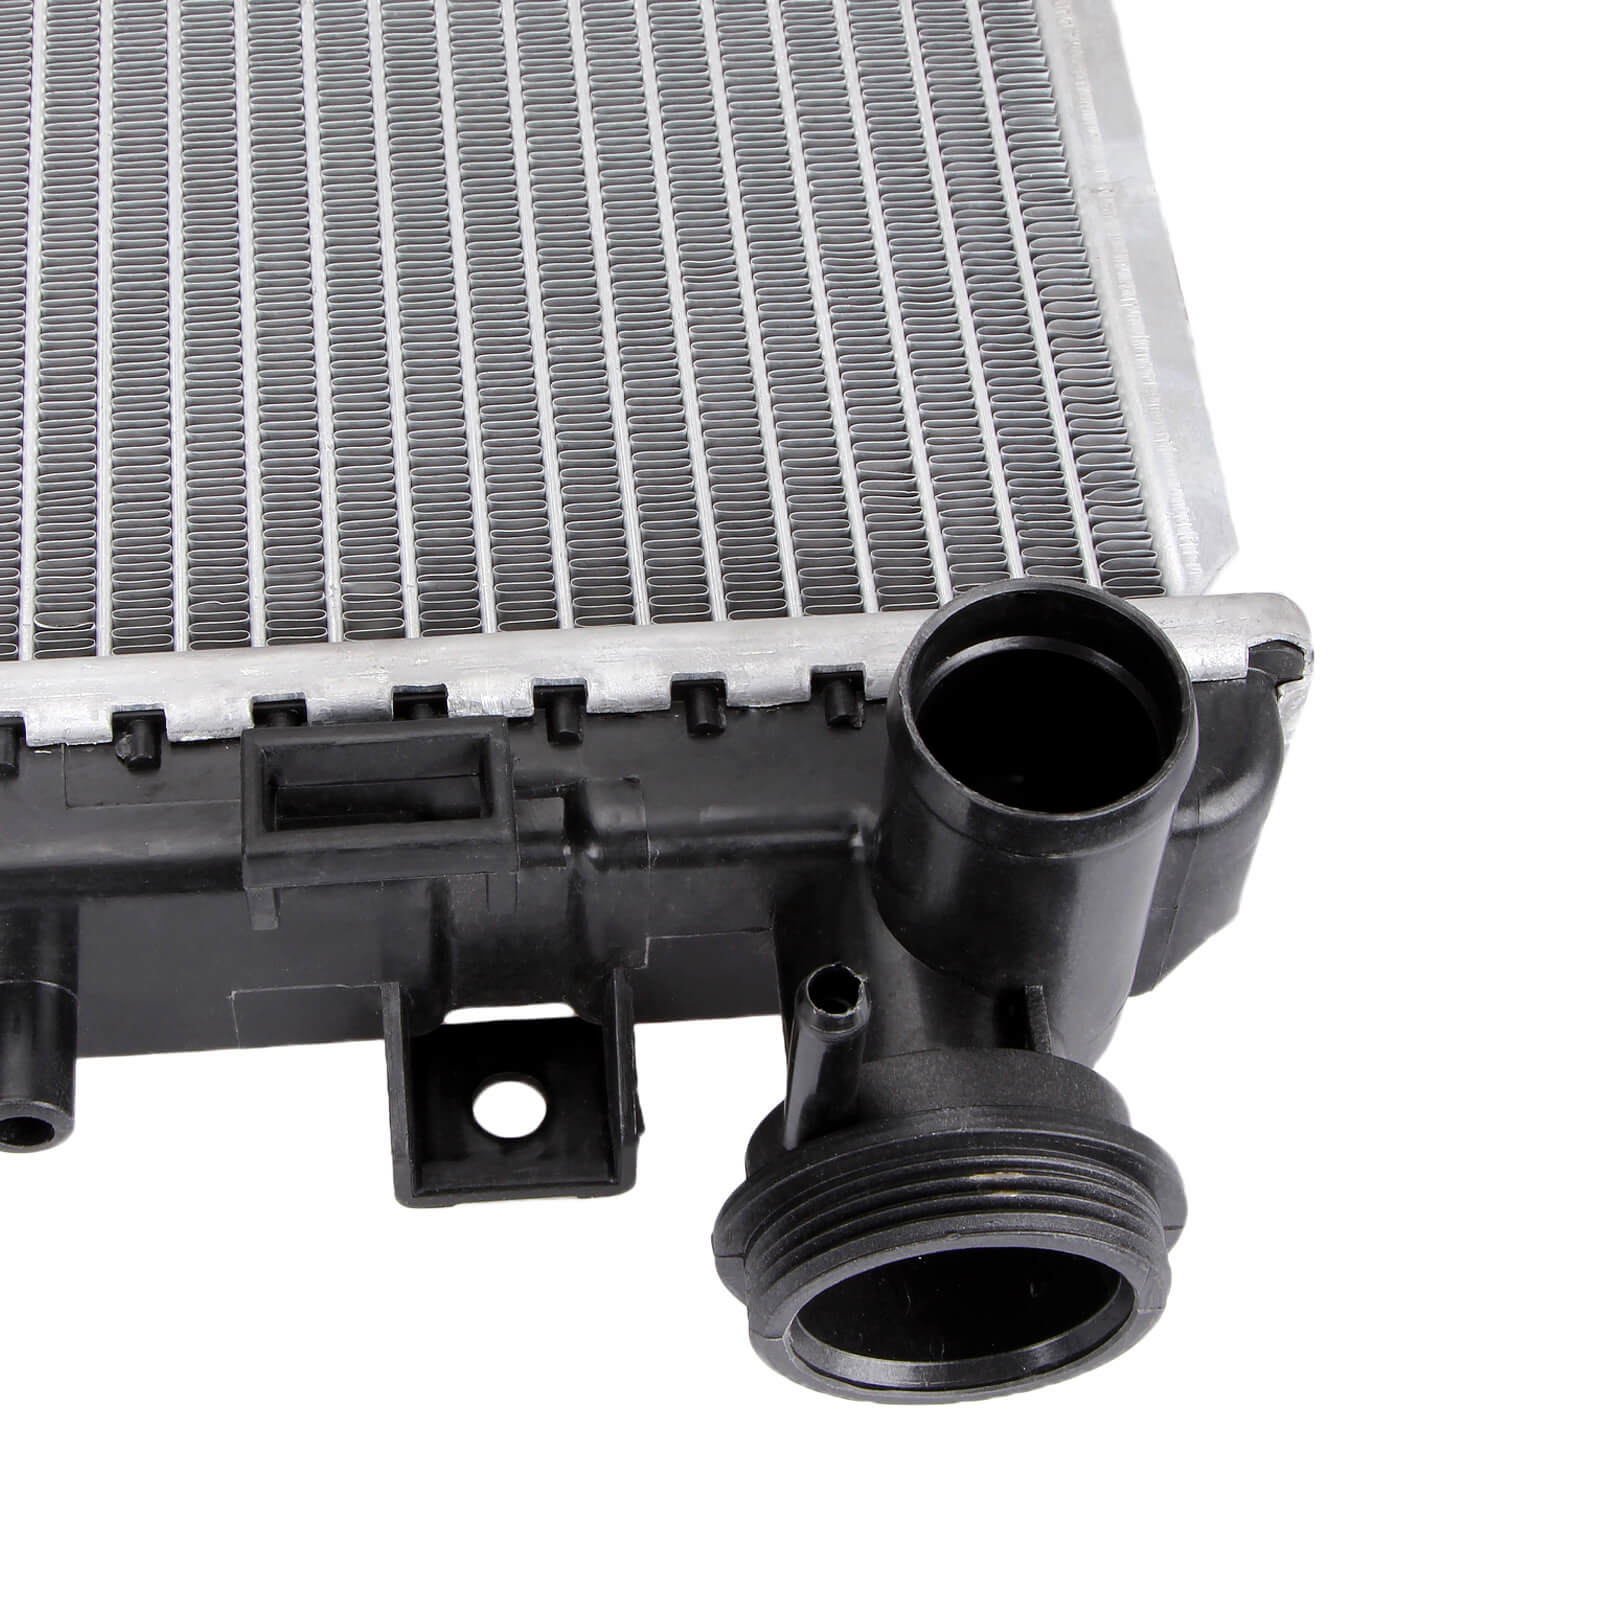 Dromedary-High Quality New 2688 Full Aluminum Radiator For Lexus Rx 330 33-202-v6-5